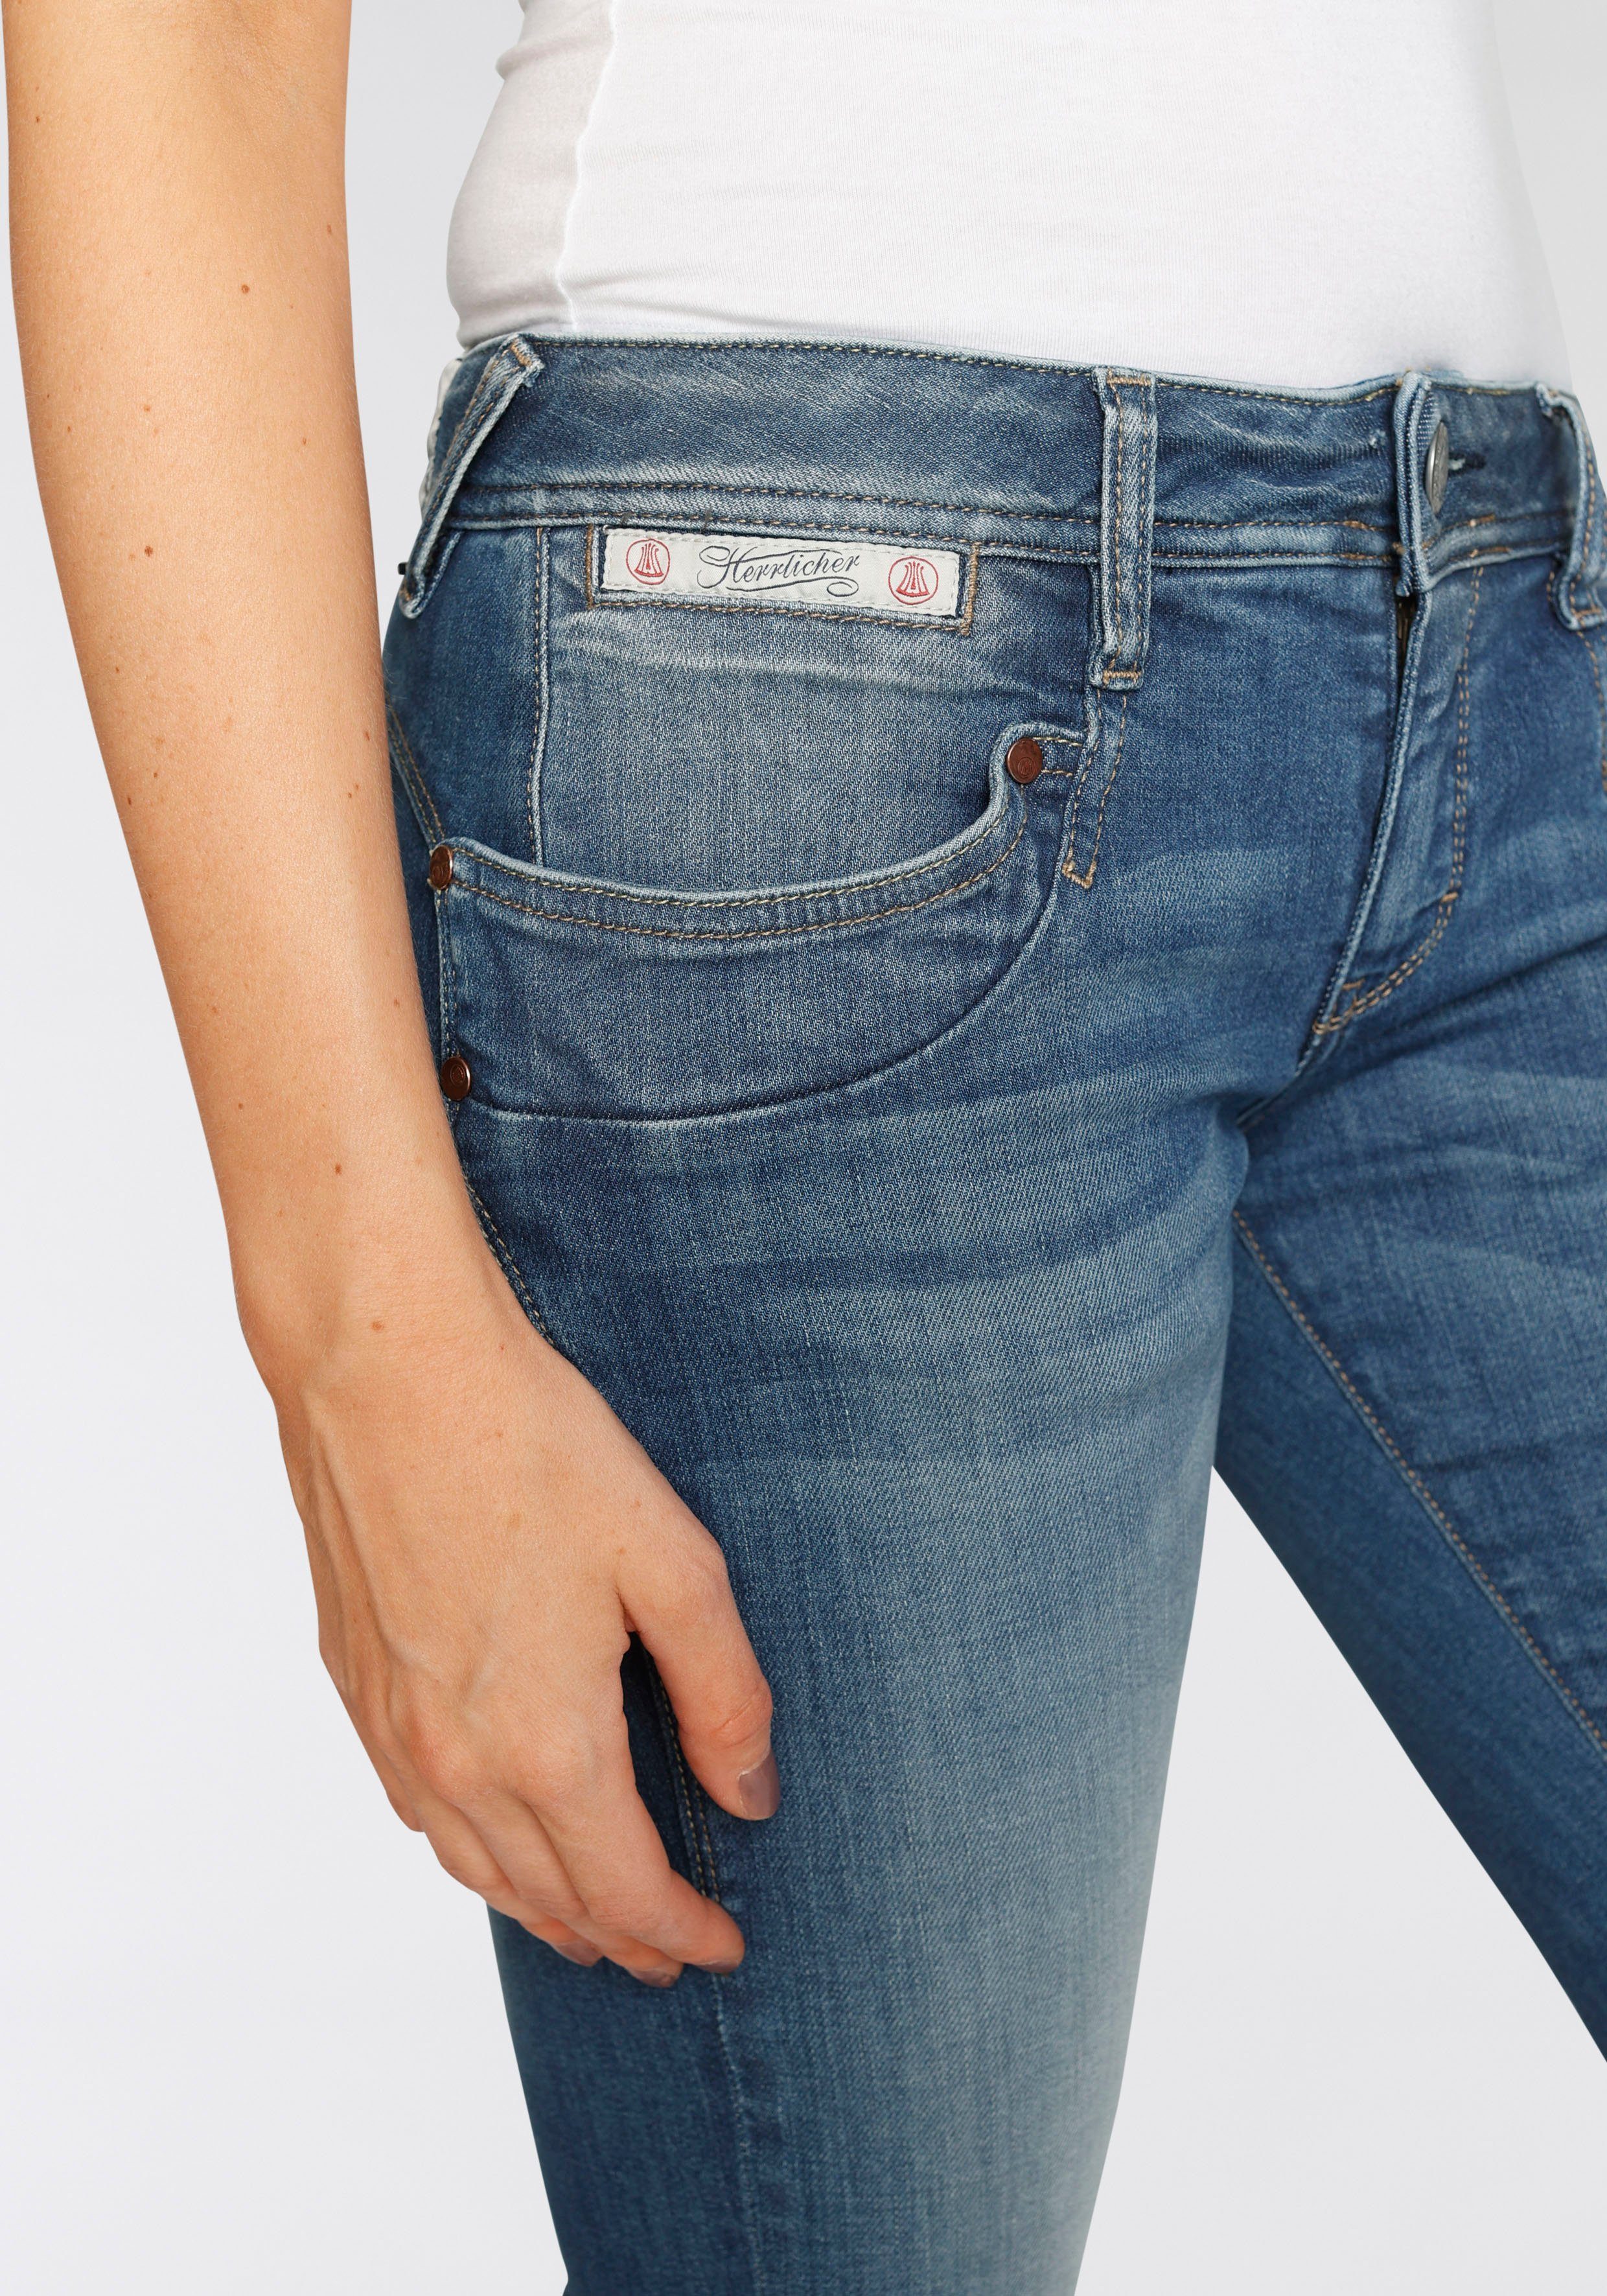 Technology SLIM Herrlicher ORGANIC PIPER Kitotex umweltfreundlich Slim-fit-Jeans dank